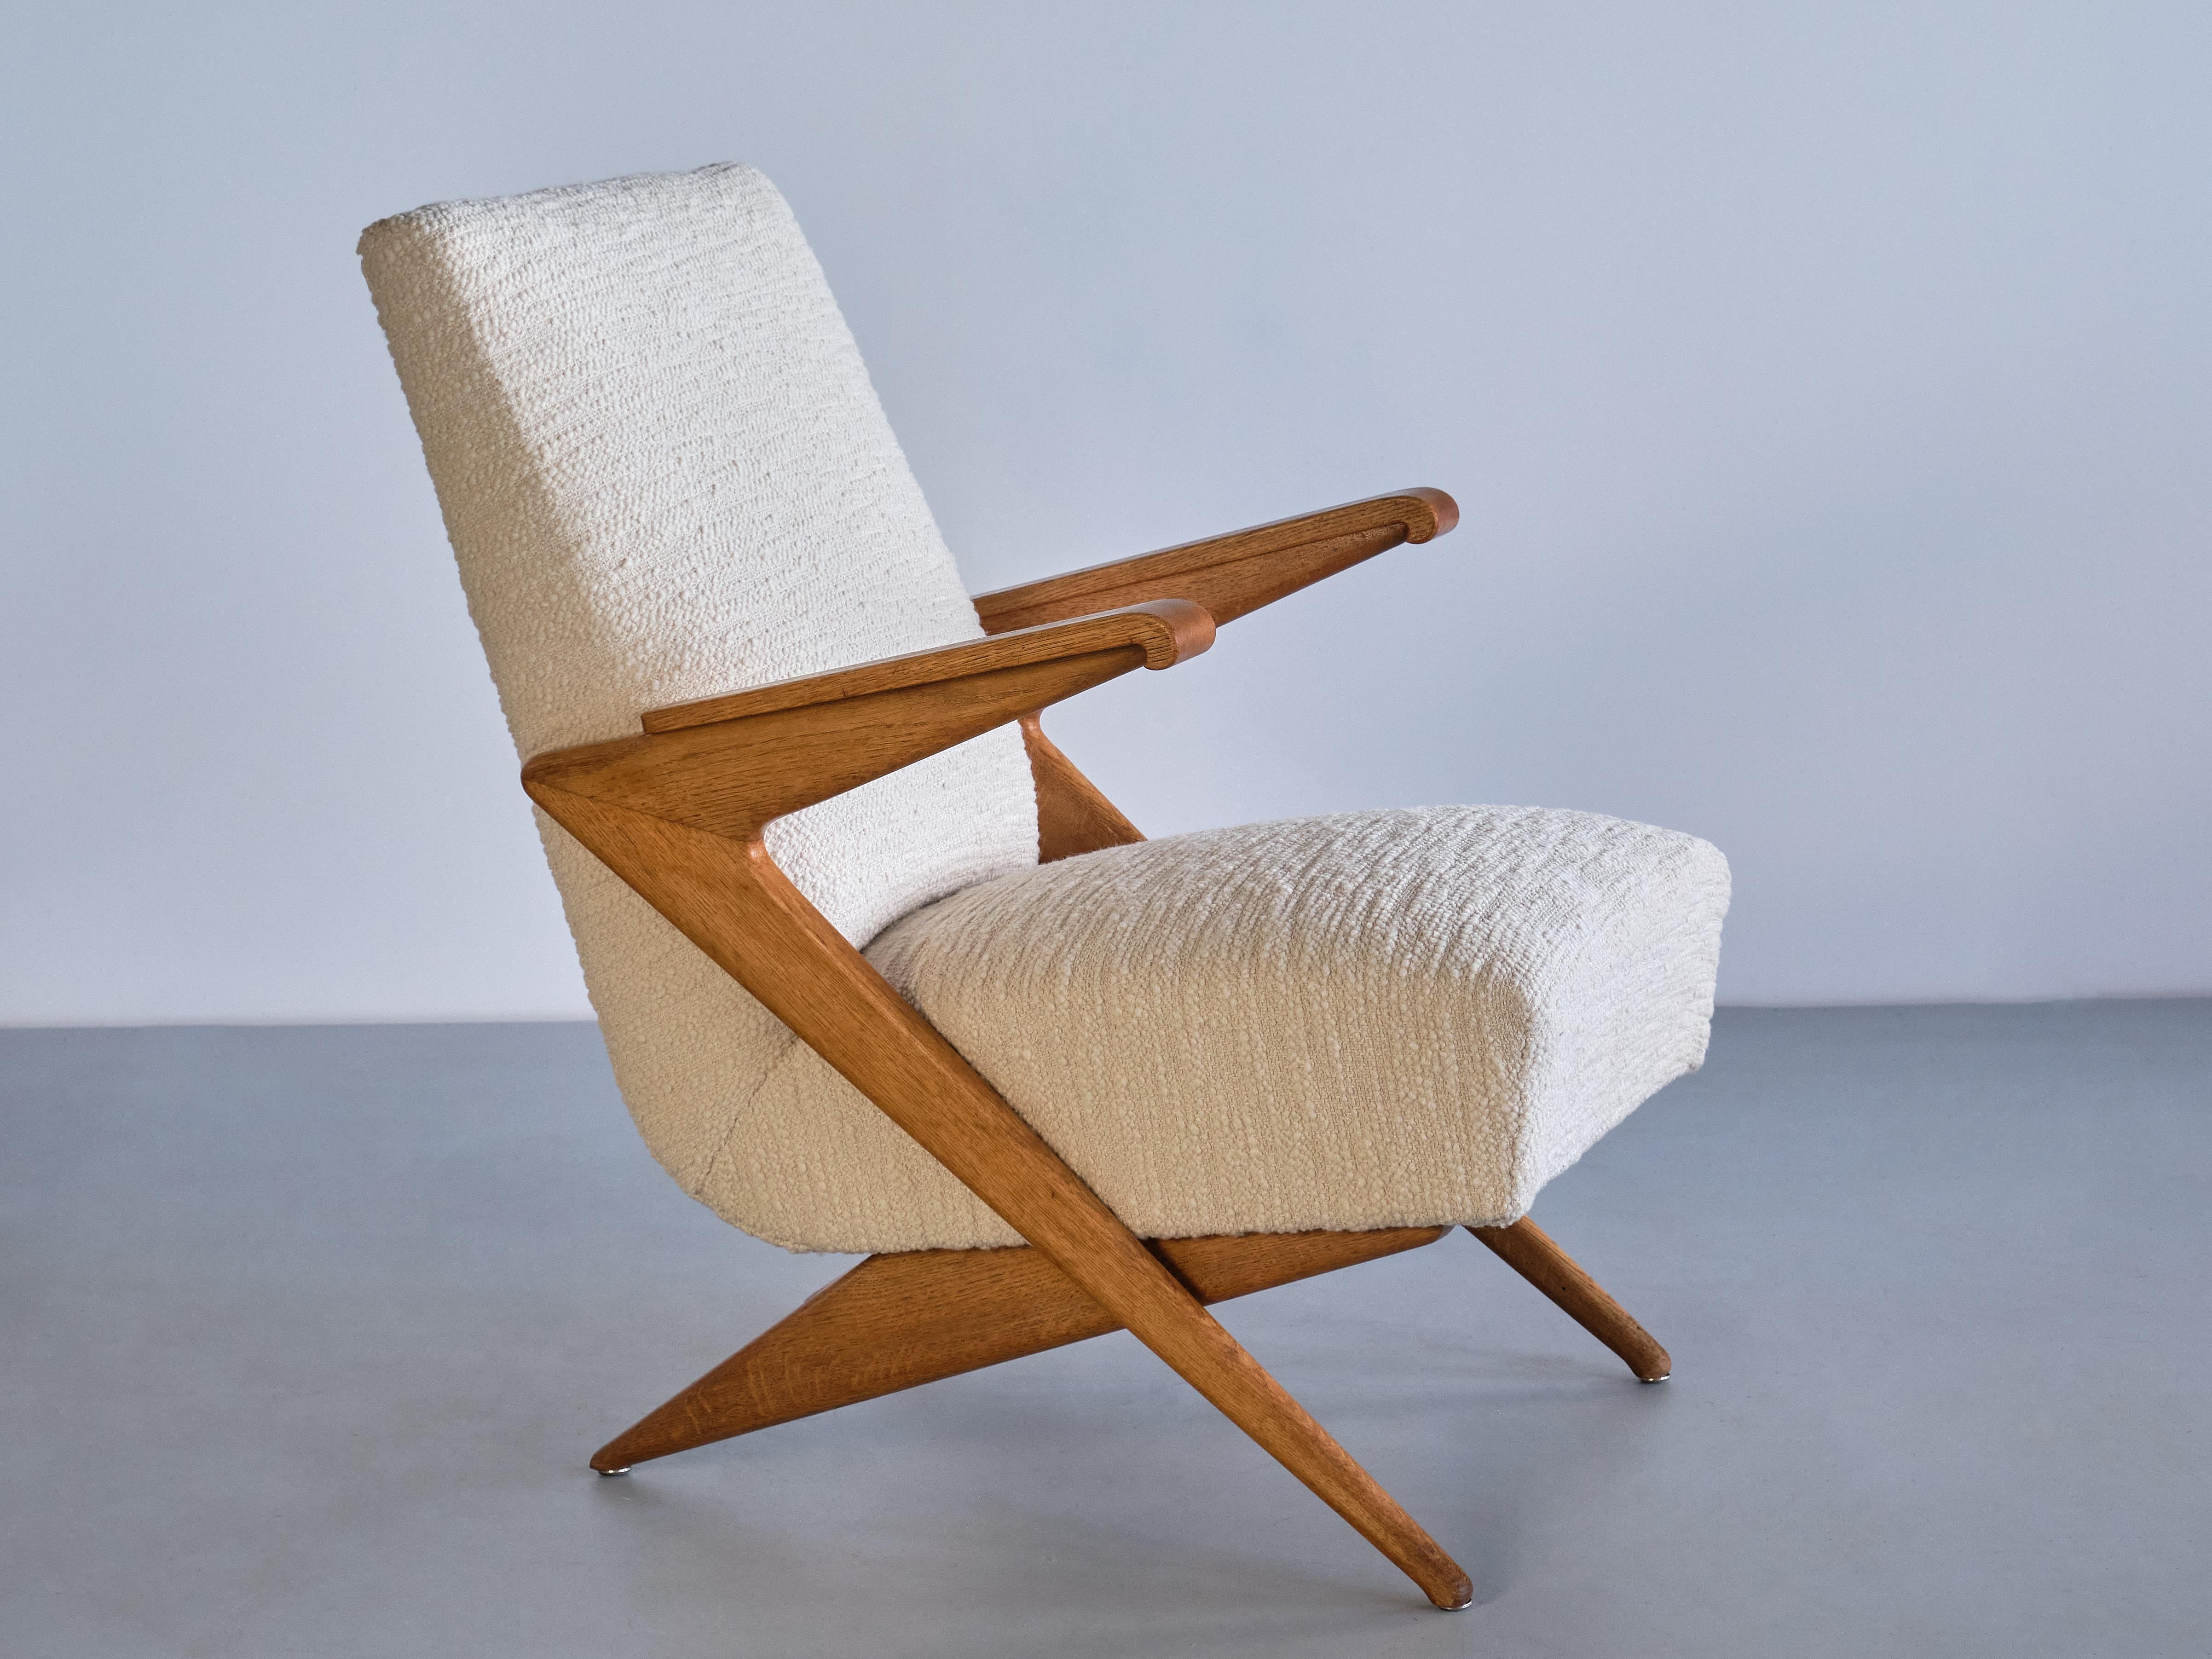 Ce fauteuil rare a été produit en France à la fin des années 1950. La conception de ce modèle particulier est attribuée au designer Gustave Gautier.

La chaise se caractérise par ses angles vifs, ses lignes géométriques et la construction en ciseaux